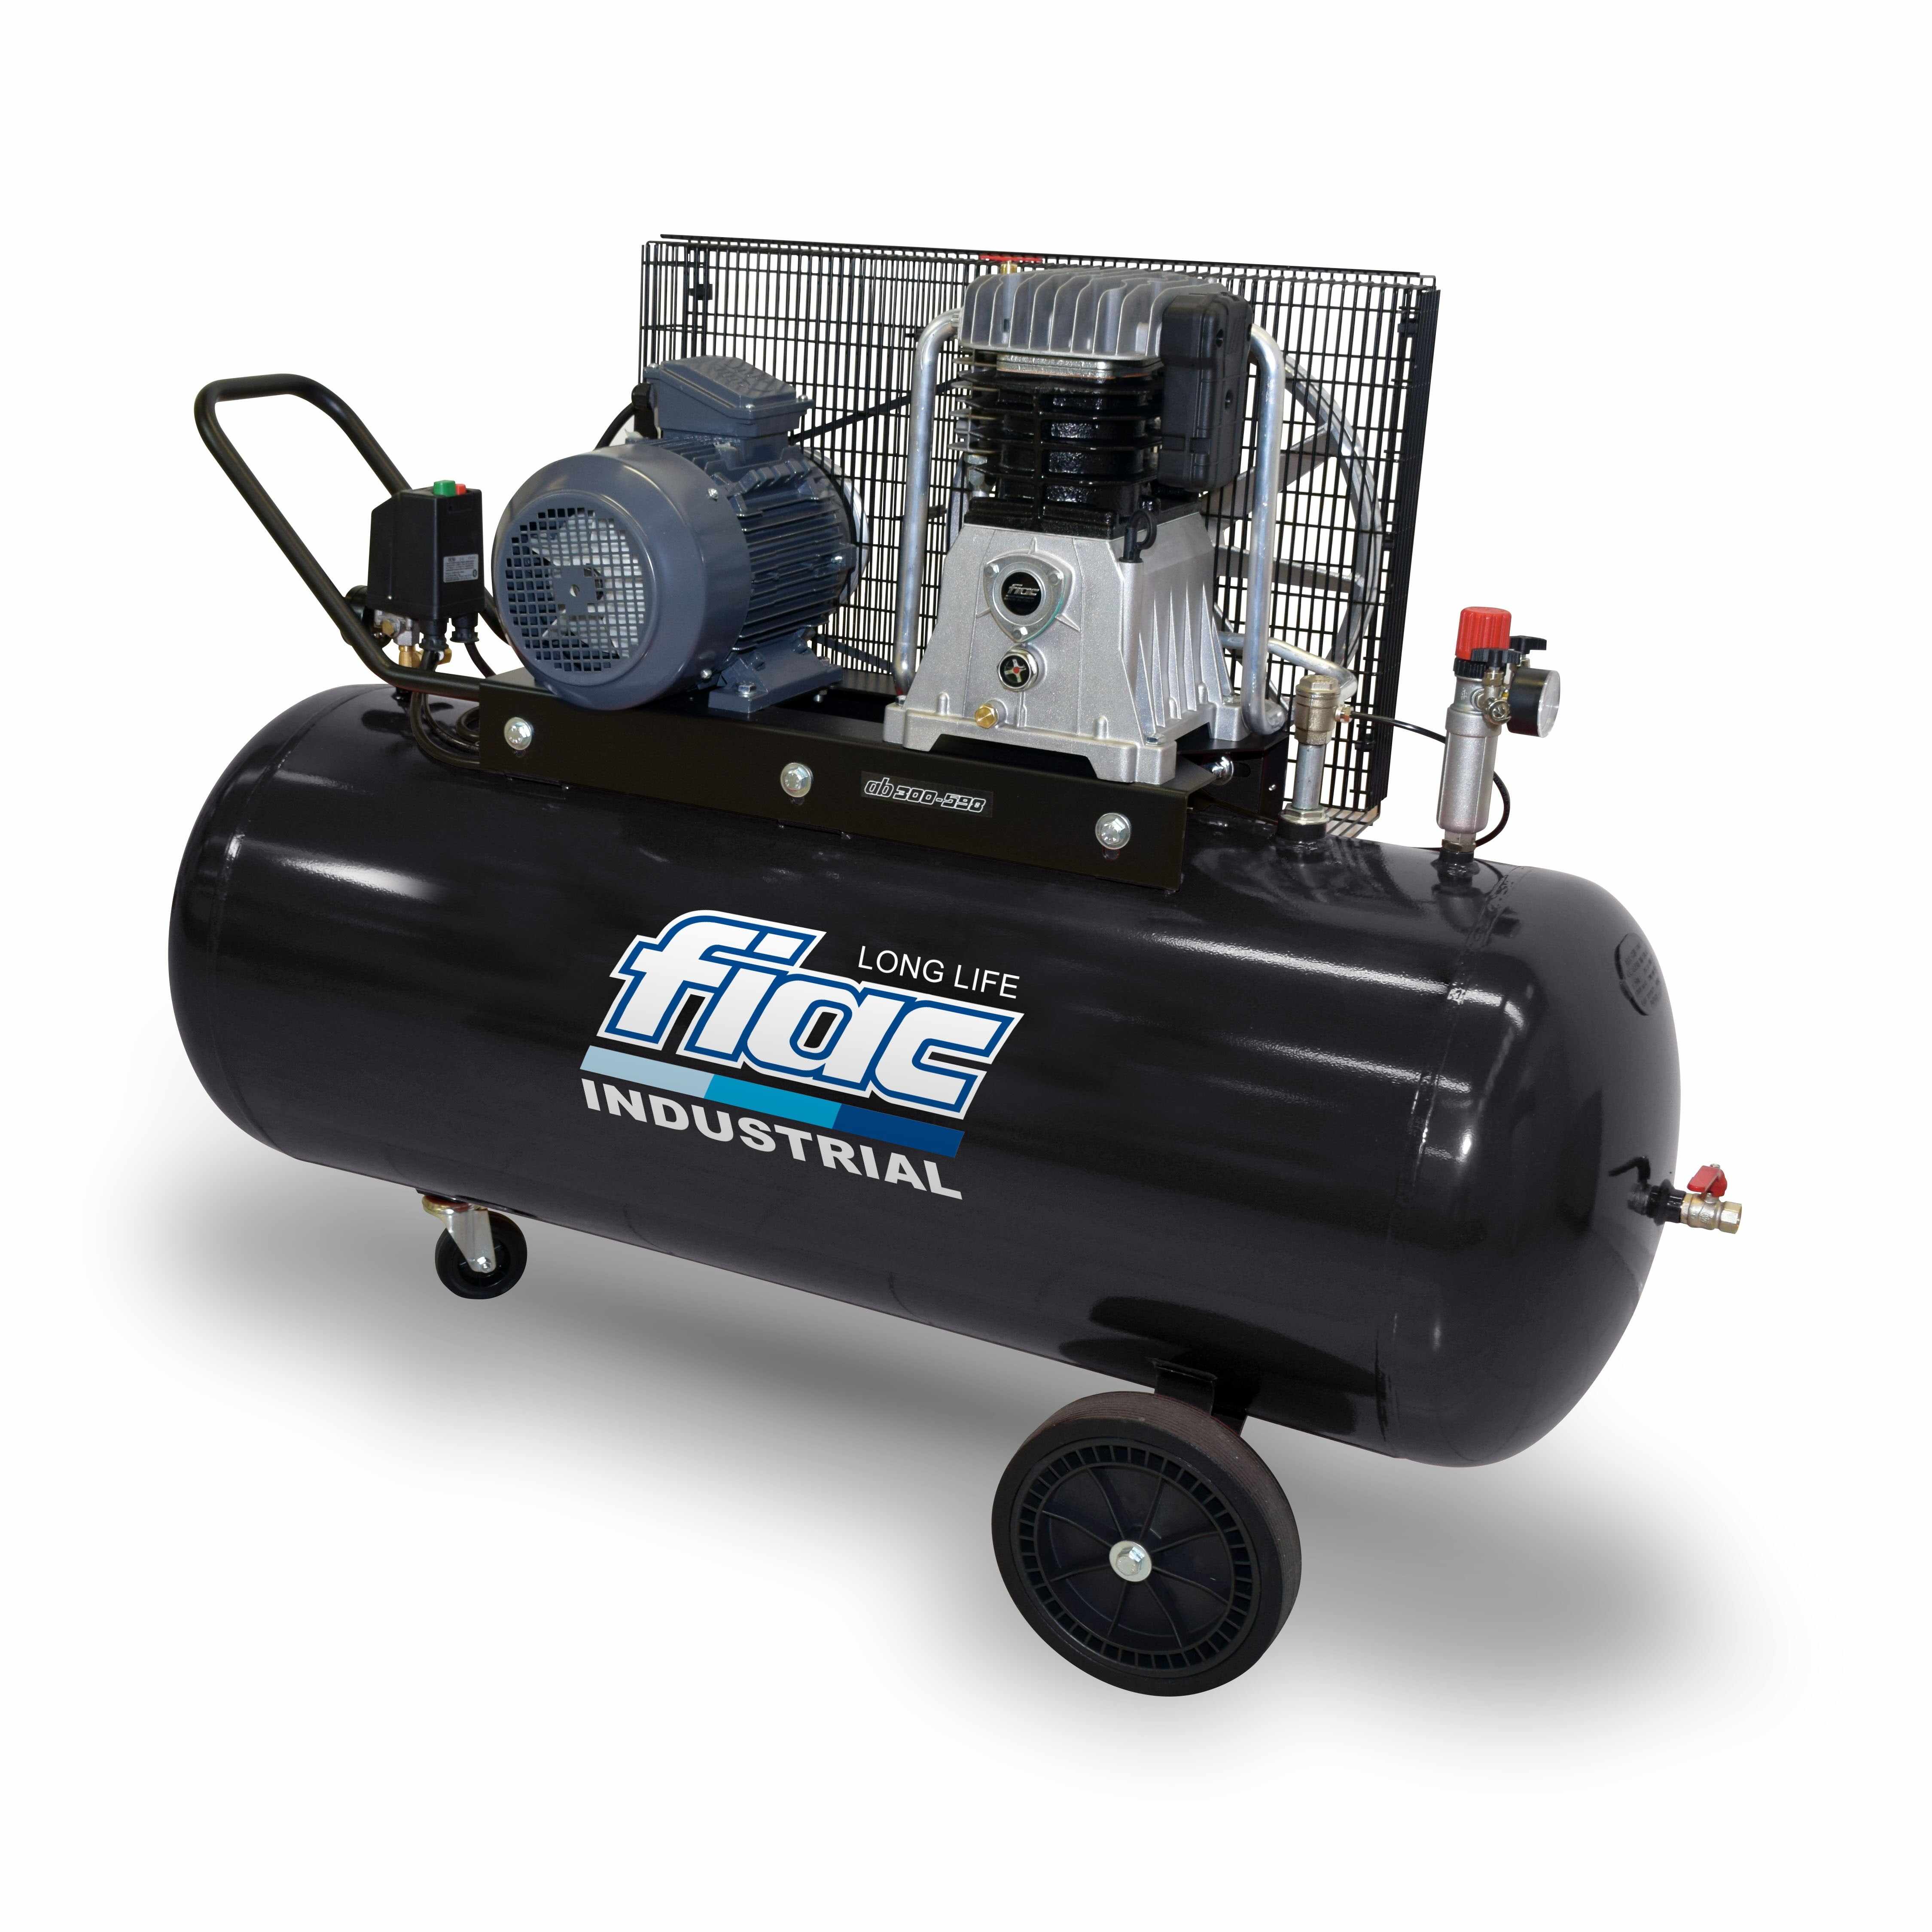 Compresor Fiac Long Life 270L 5.5 Hp 1270 rpm 600L/min - AB300/598